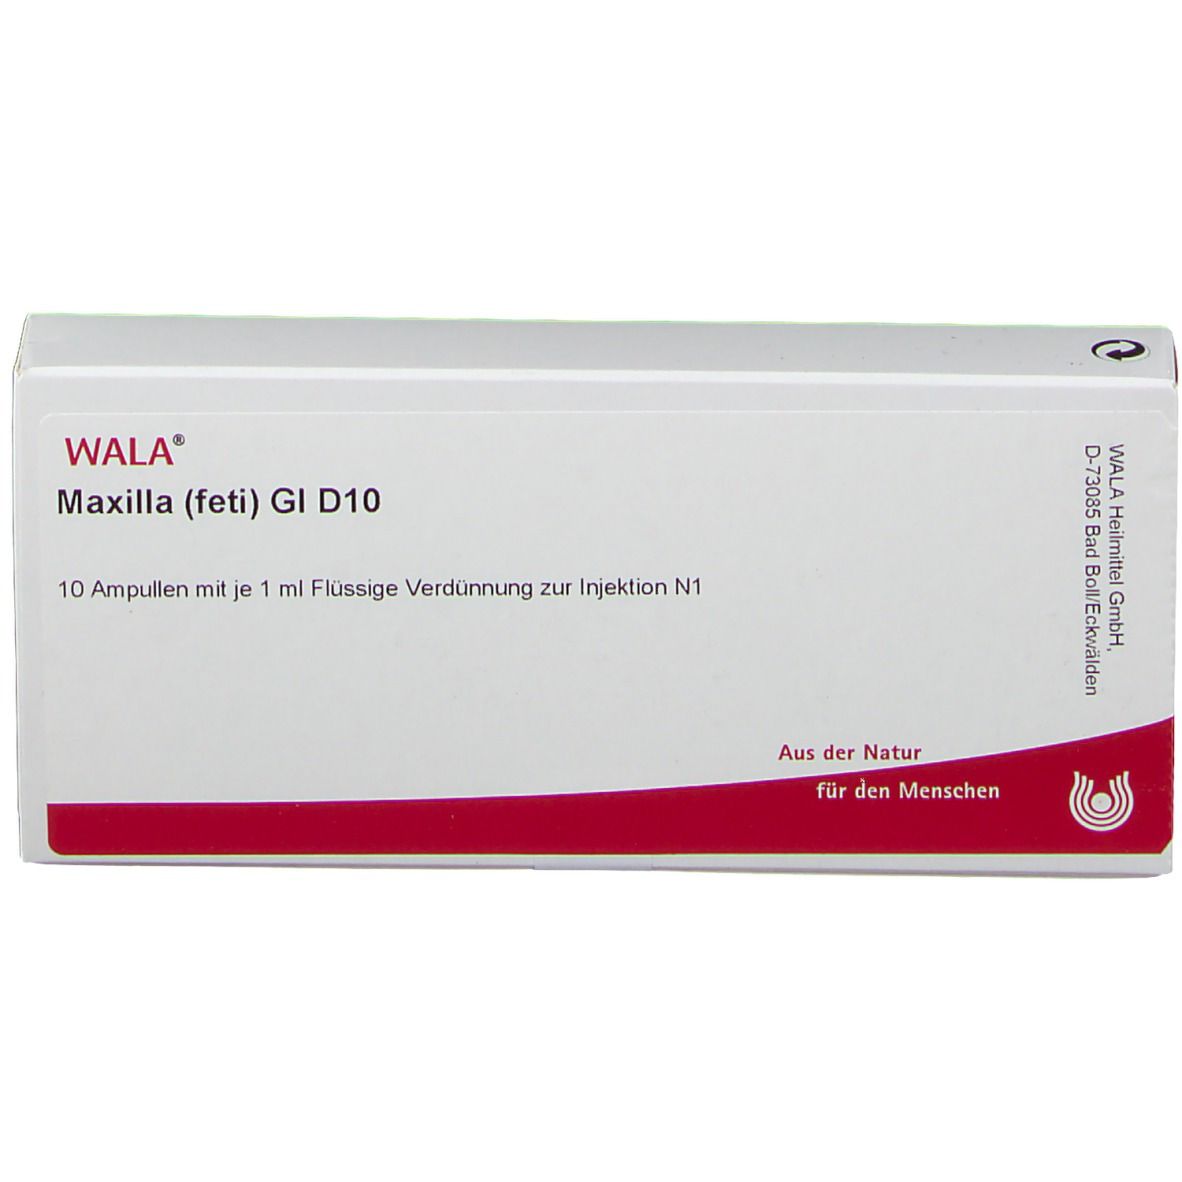 WALA® Maxilla feti Gl D 10